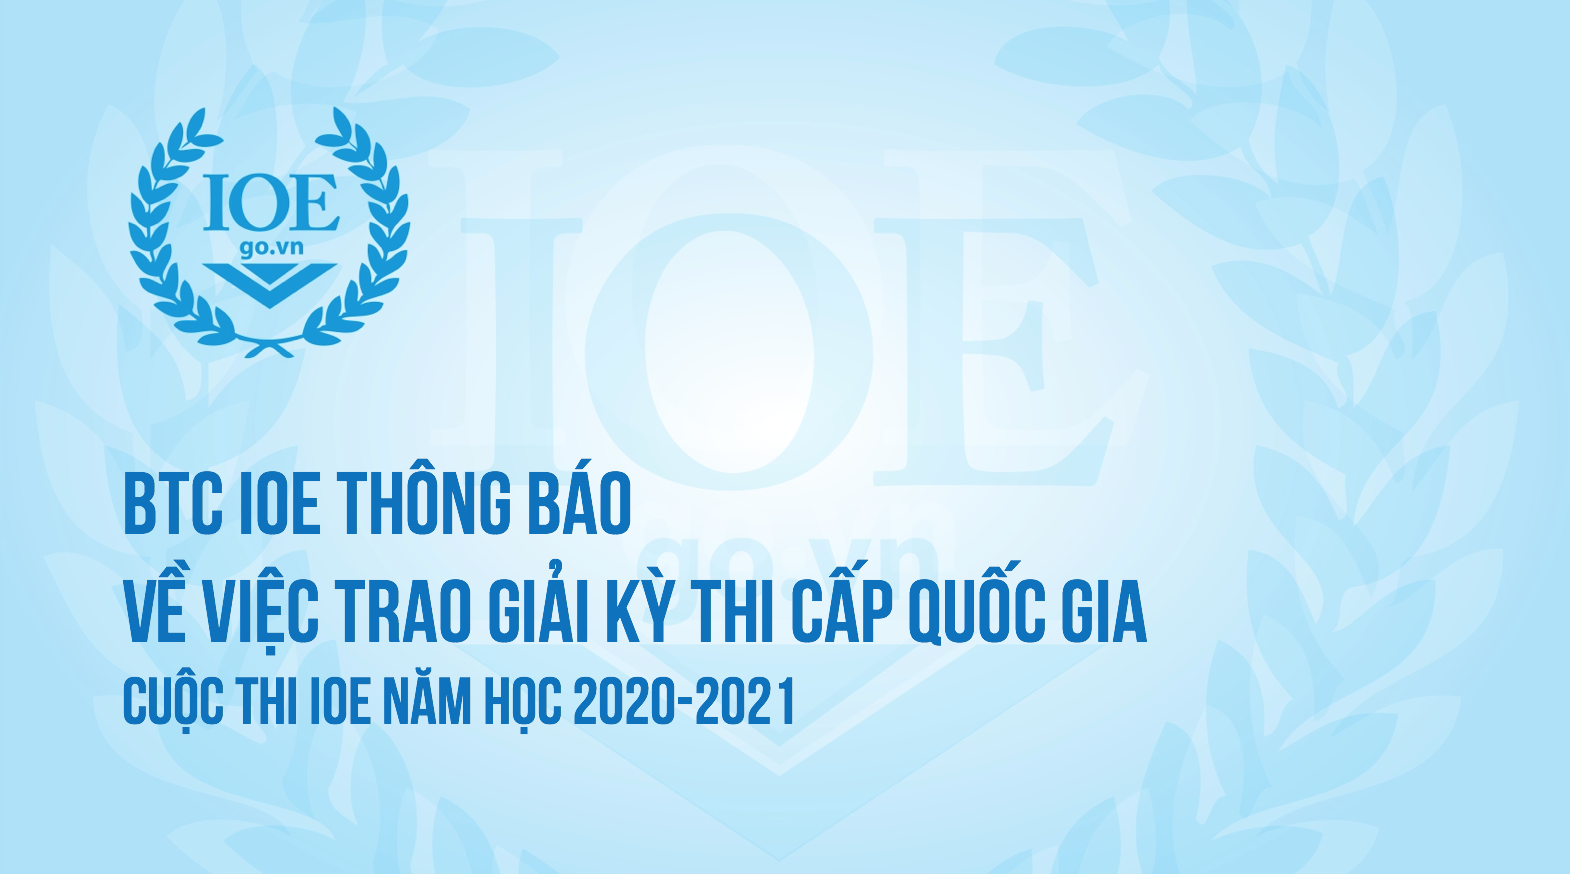 BTC IOE thông báo về việc trao giải kỳ thi cấp Quốc gia năm học 2020-2021